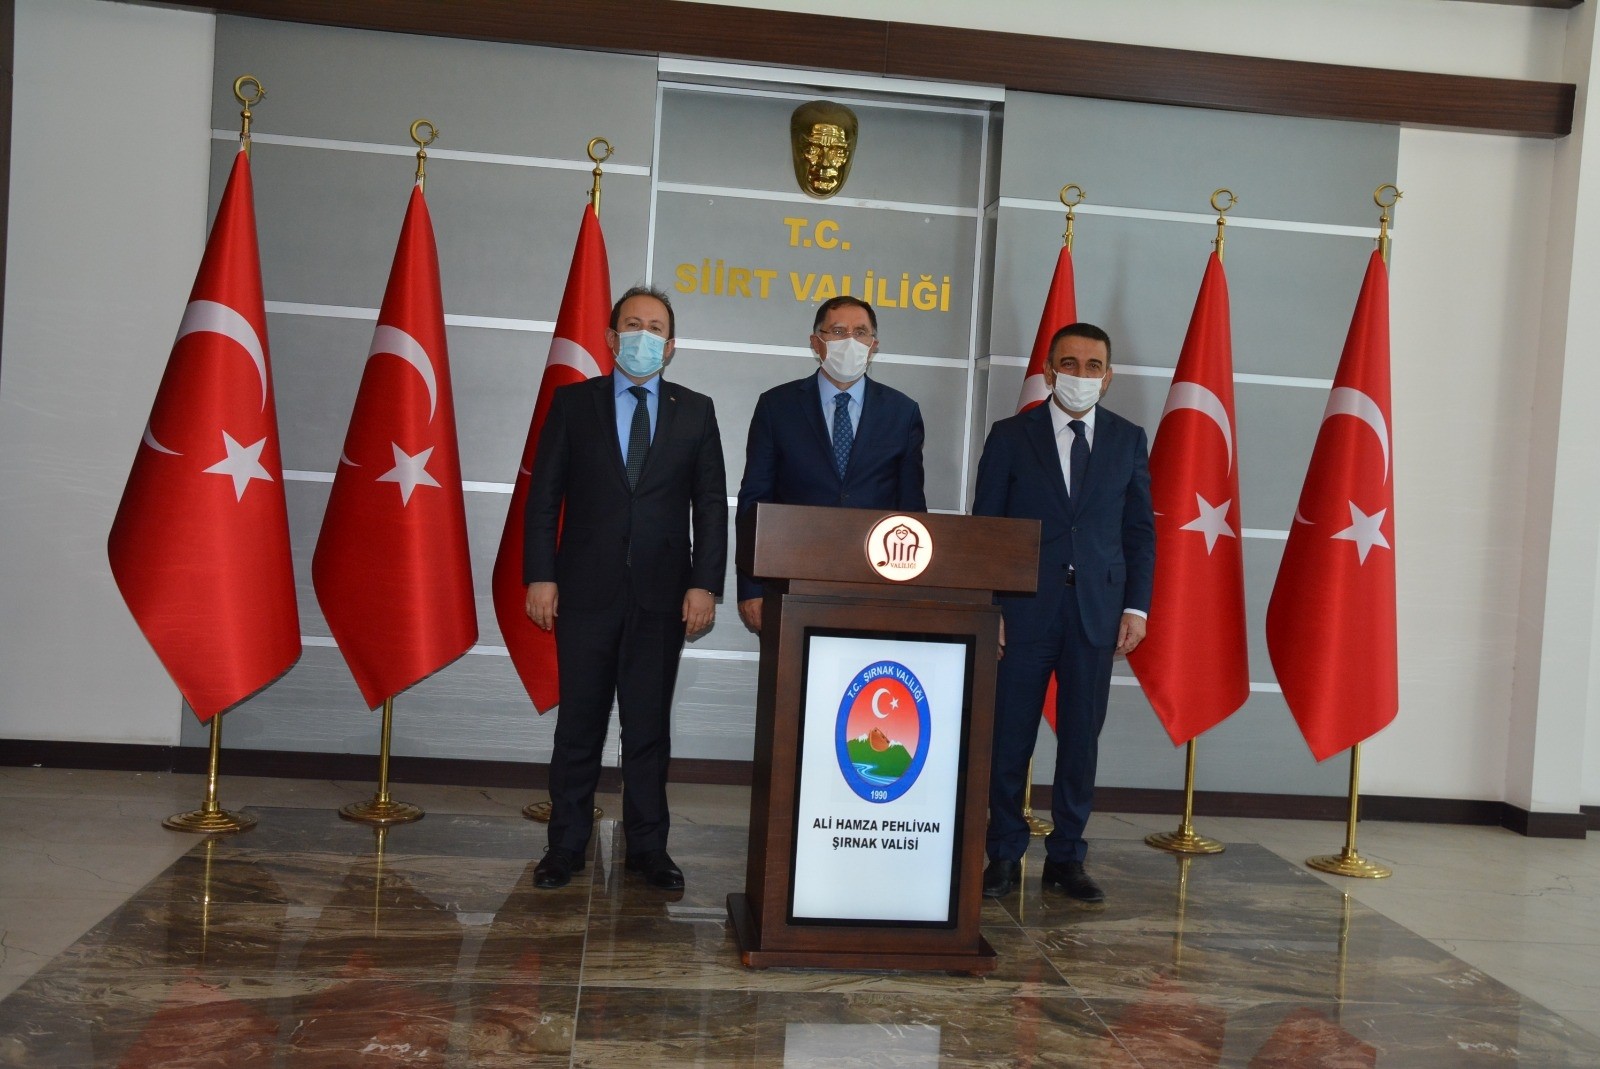 Kamu Başdenetçisi Malkoç, Vali Hacıbektaşoğlu ile bir araya geldi